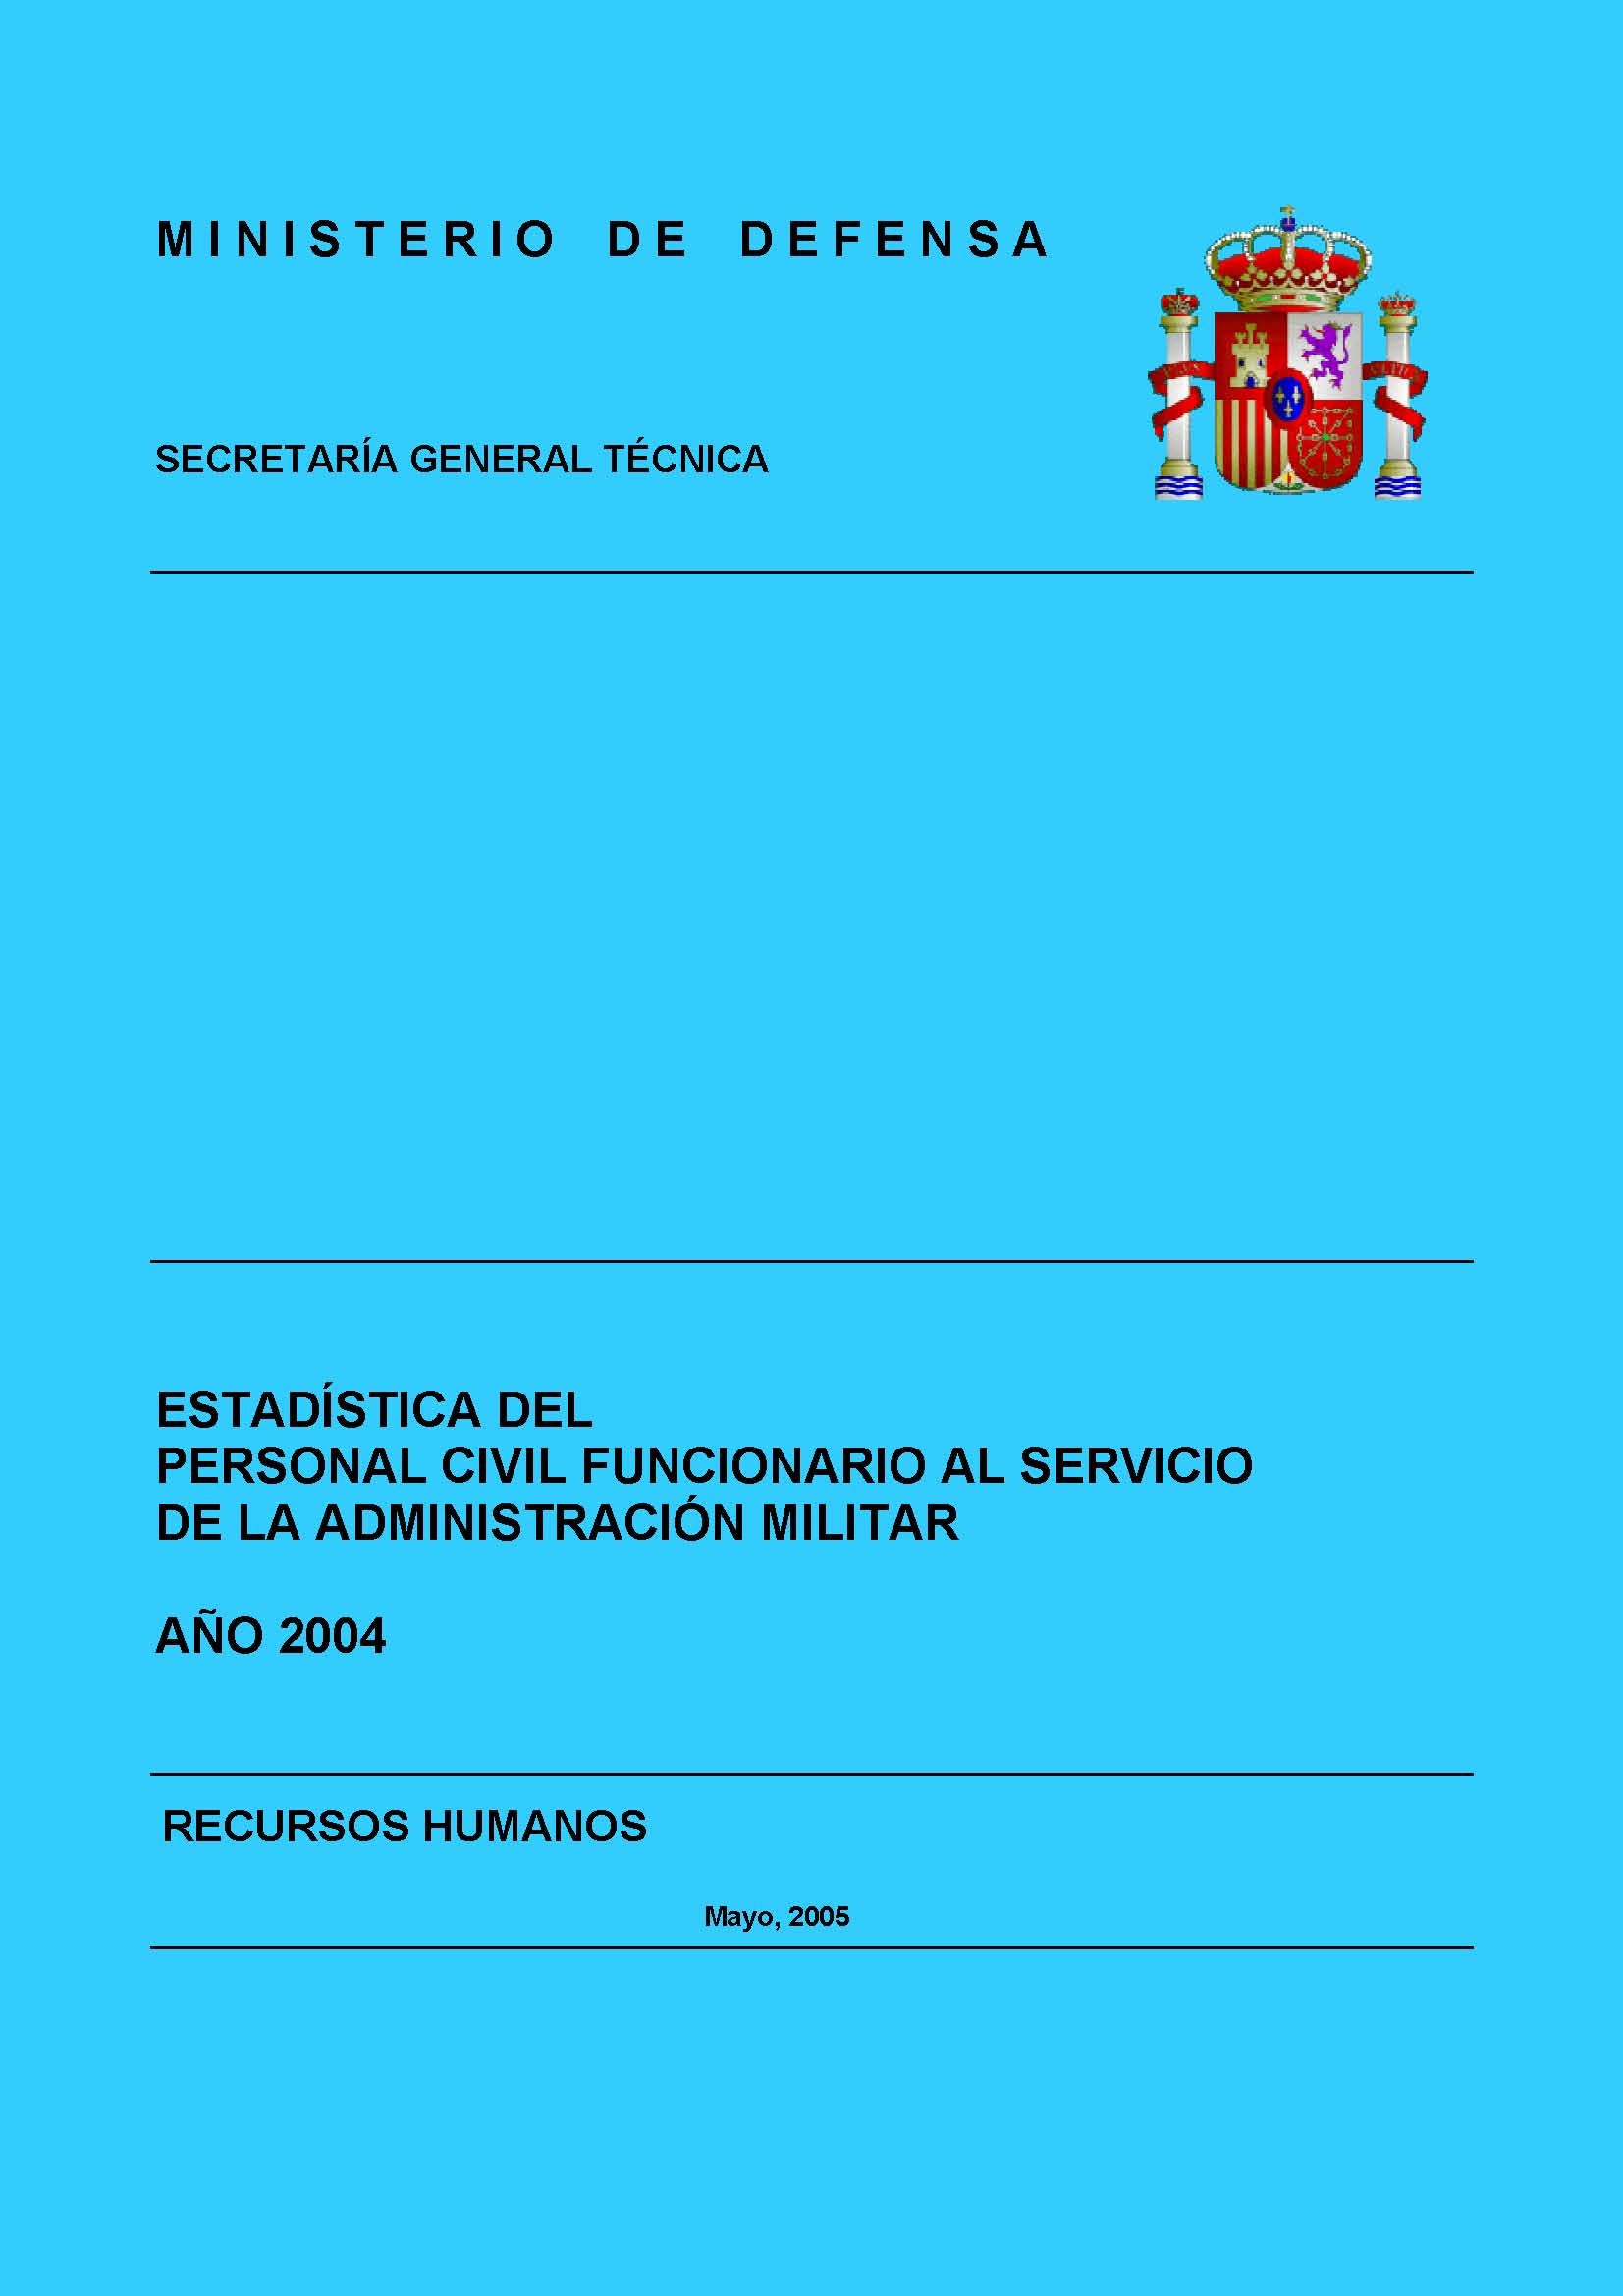 ESTADÍSTICA DEL PERSONAL CIVIL FUNCIONARIO AL SERVICIO DE LA ADMINISTRACIÓN MILITAR 2004